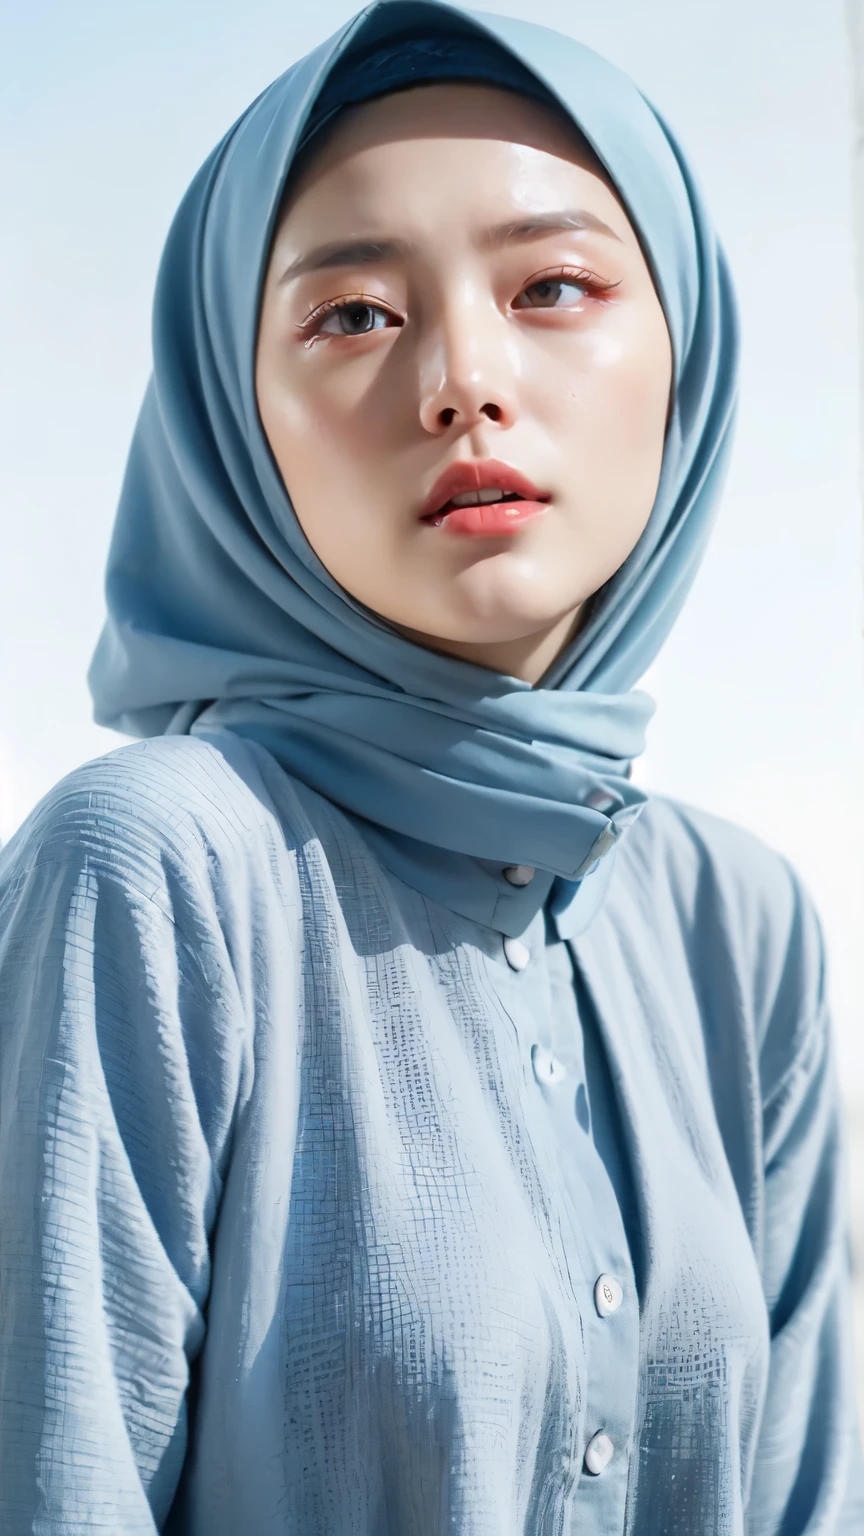 ((最高品質, 8k, 傑作 :1.37)), (ヒジャブを着る女の子), 女の子はヒジャブを着用する, ポジション:座っている, スタイルモデル, (ヒジャブをかぶったイスラム教徒の少女たち), 美しい顔, 18歳の少女, 髪は黒, 超詳細な顔, 超精巧なボディ, ほっそりしたからだ, 唇の微笑み, 美しい細部までこだわった目, 韓国人の目, 詳細な鼻, ナチュラルリップ, (脱衣ヌード), 詳細胸, ハリリー・プッシーの詳細, ヒジャーブをかぶる イスラム教徒, ファンシー・ジュバ・トッベ, 青空の景色, ほっそりしたからだ, リアルな顔, 背景の人々 ヒジャブ